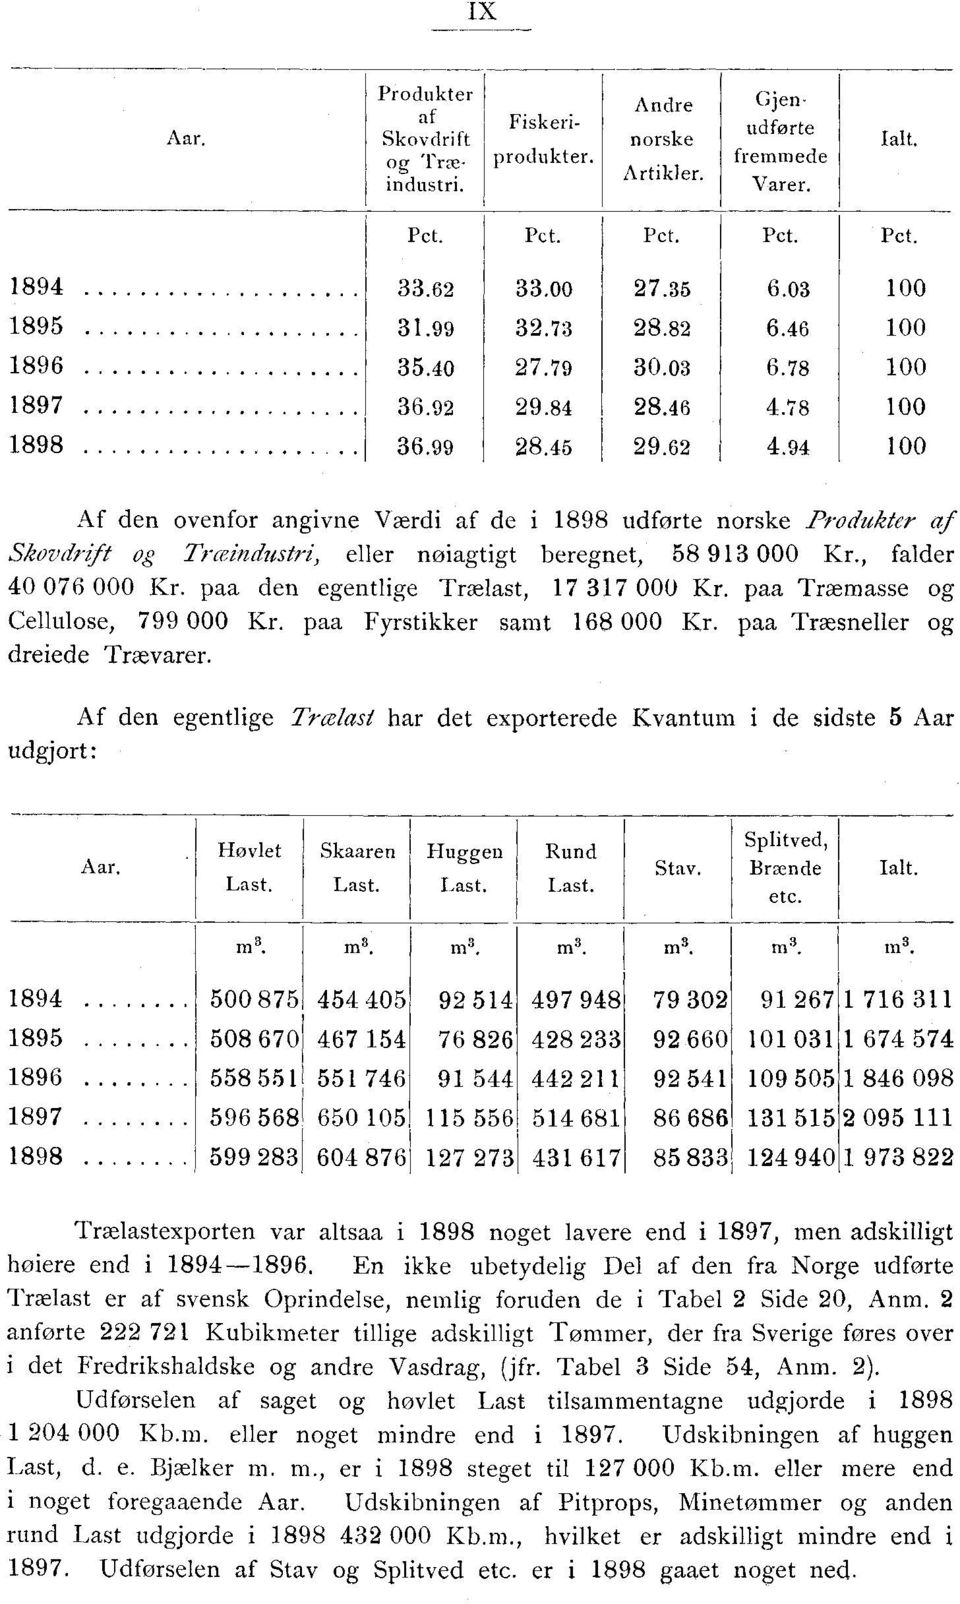 94 Af den ovenfor angivne Værdi af de i 1898 udførte norske Produkter af Skovdrift og Træindustri, eller nøiagtigt beregnet, 58 913 000, falder 40 076 000 paa den egentlige Trælast, 17 317 000 paa